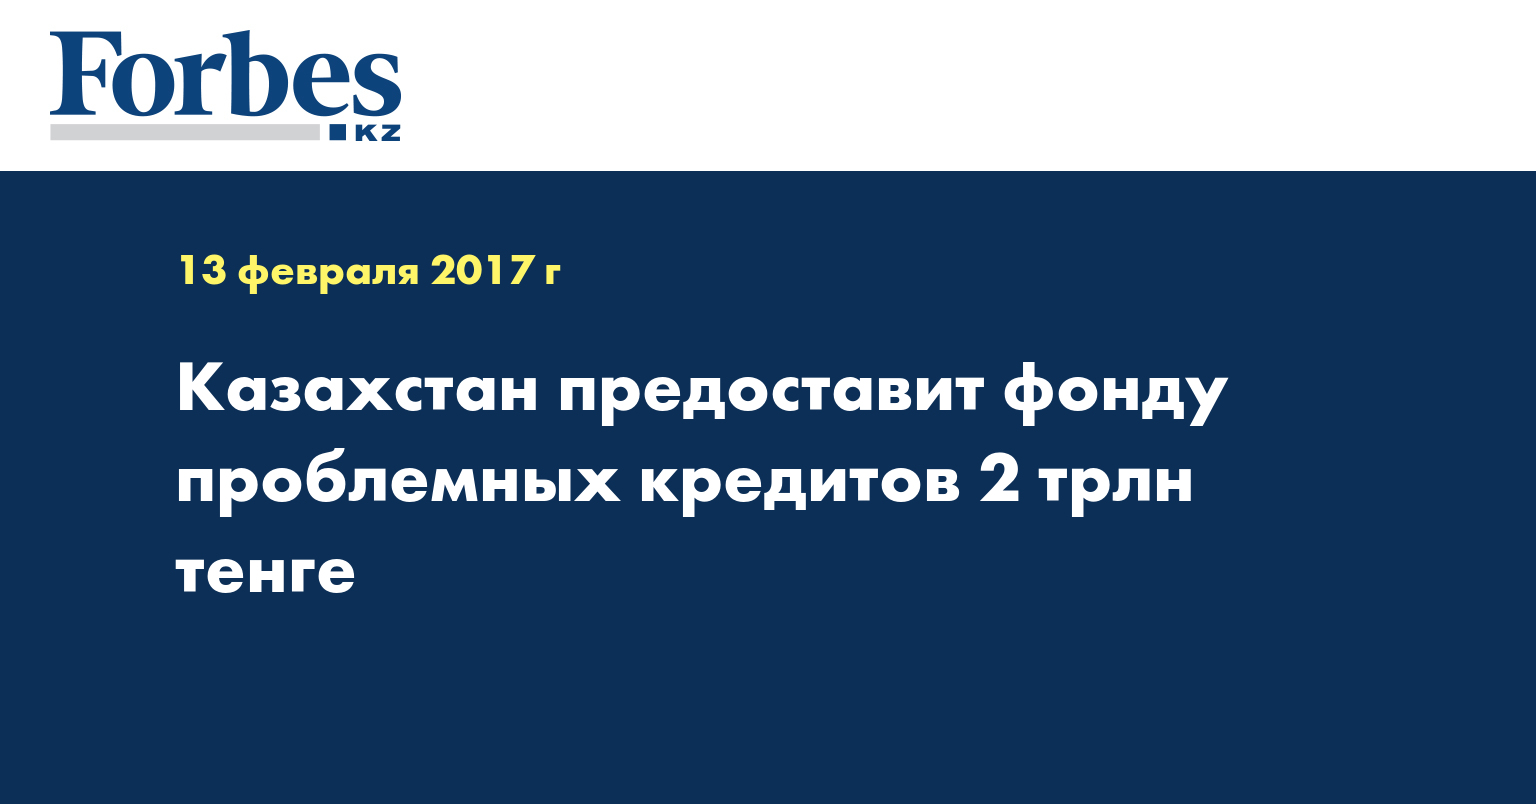 Казахстан предоставит фонду проблемных кредитов 2 трлн тенге